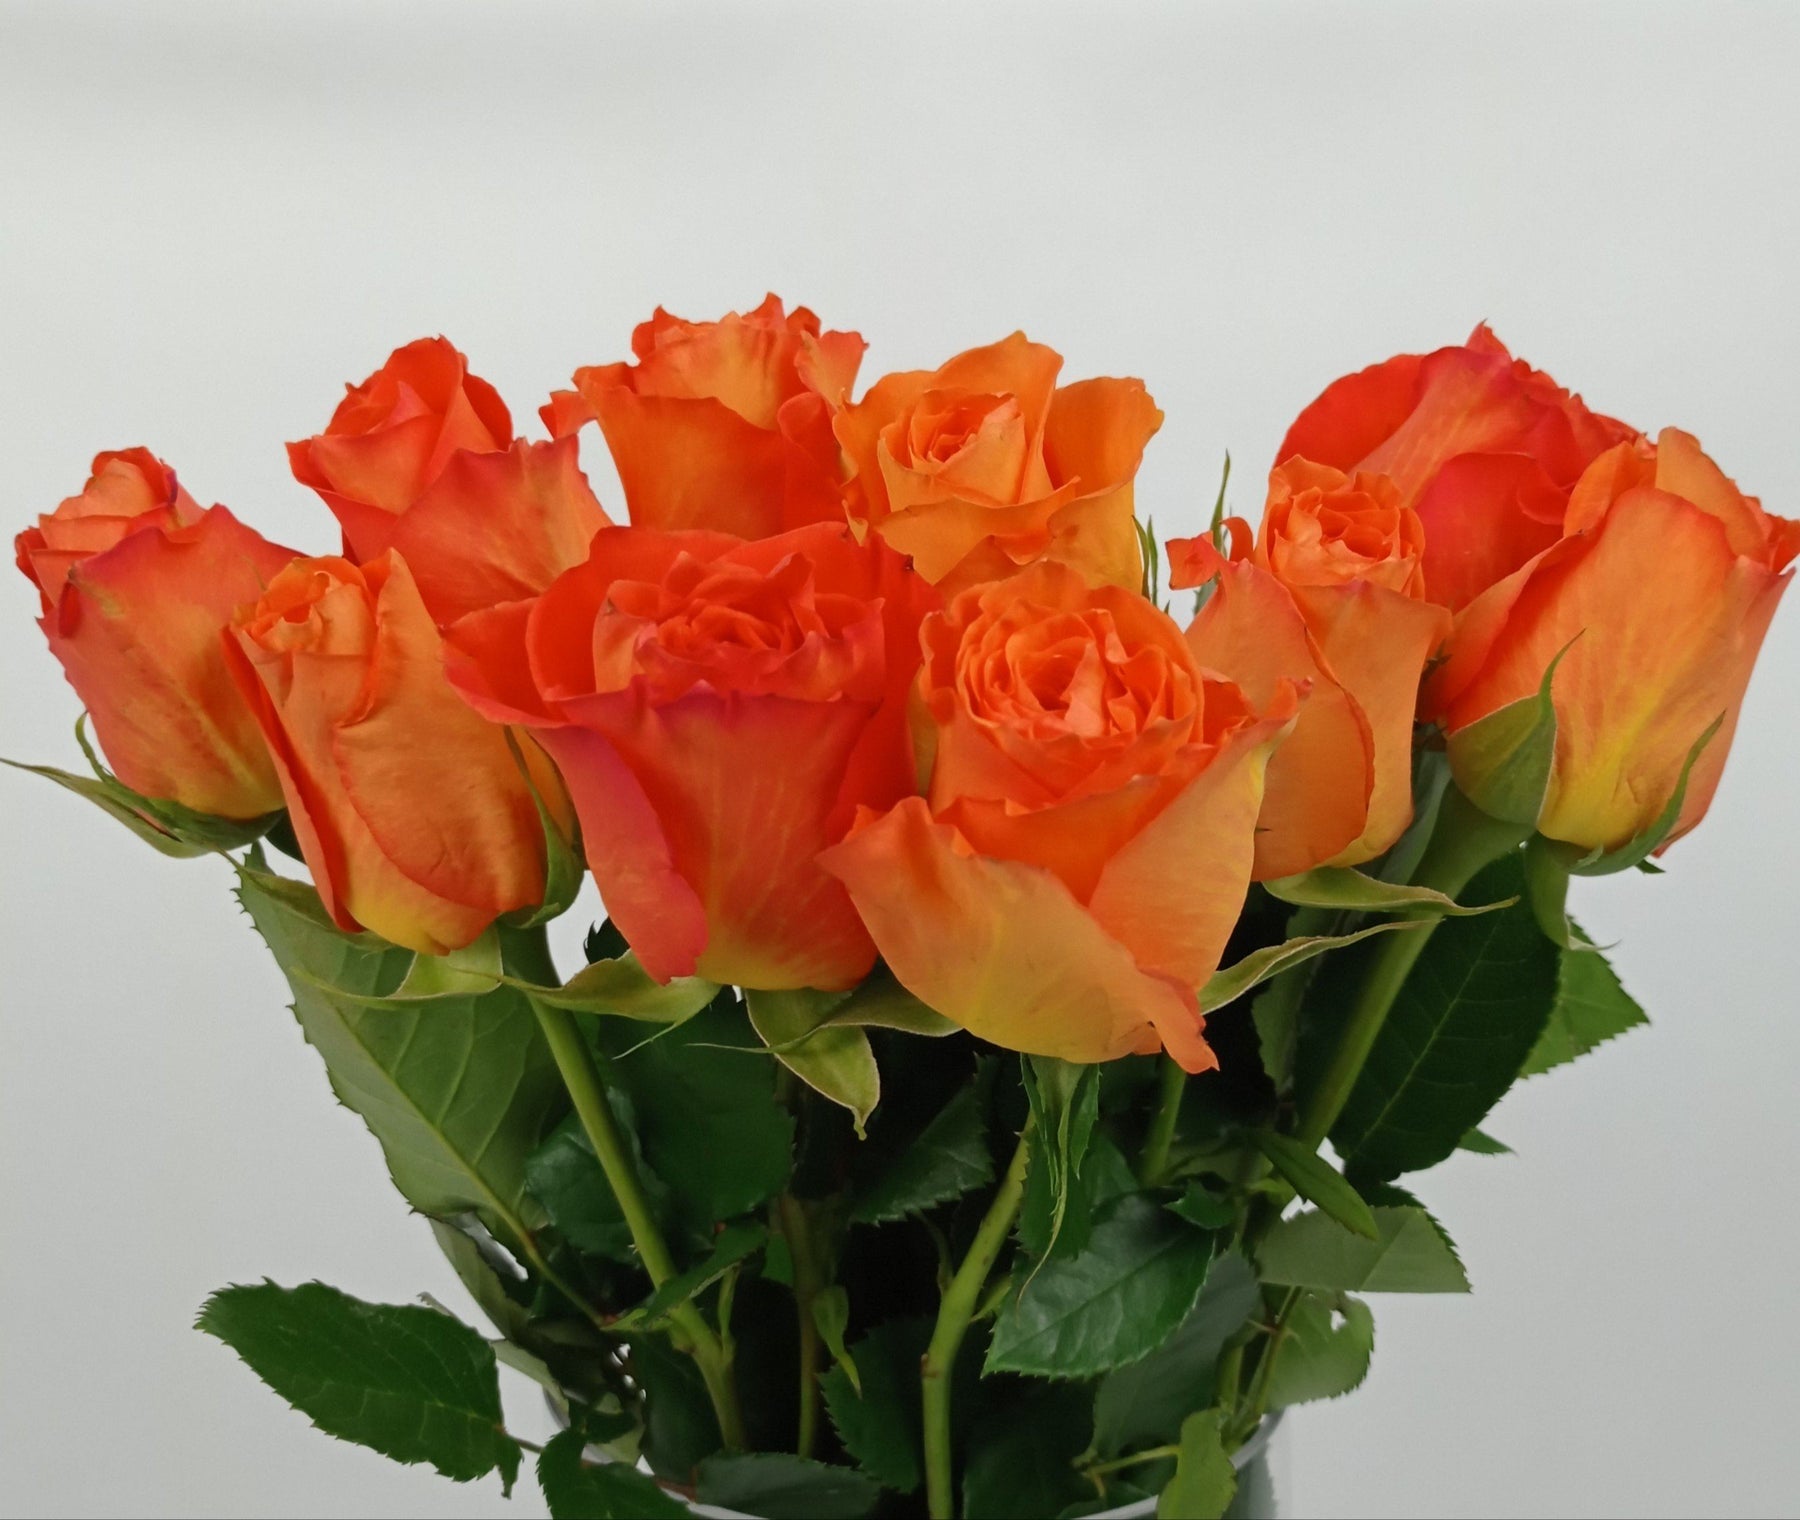 Rose  40cm (Imported) - Orange